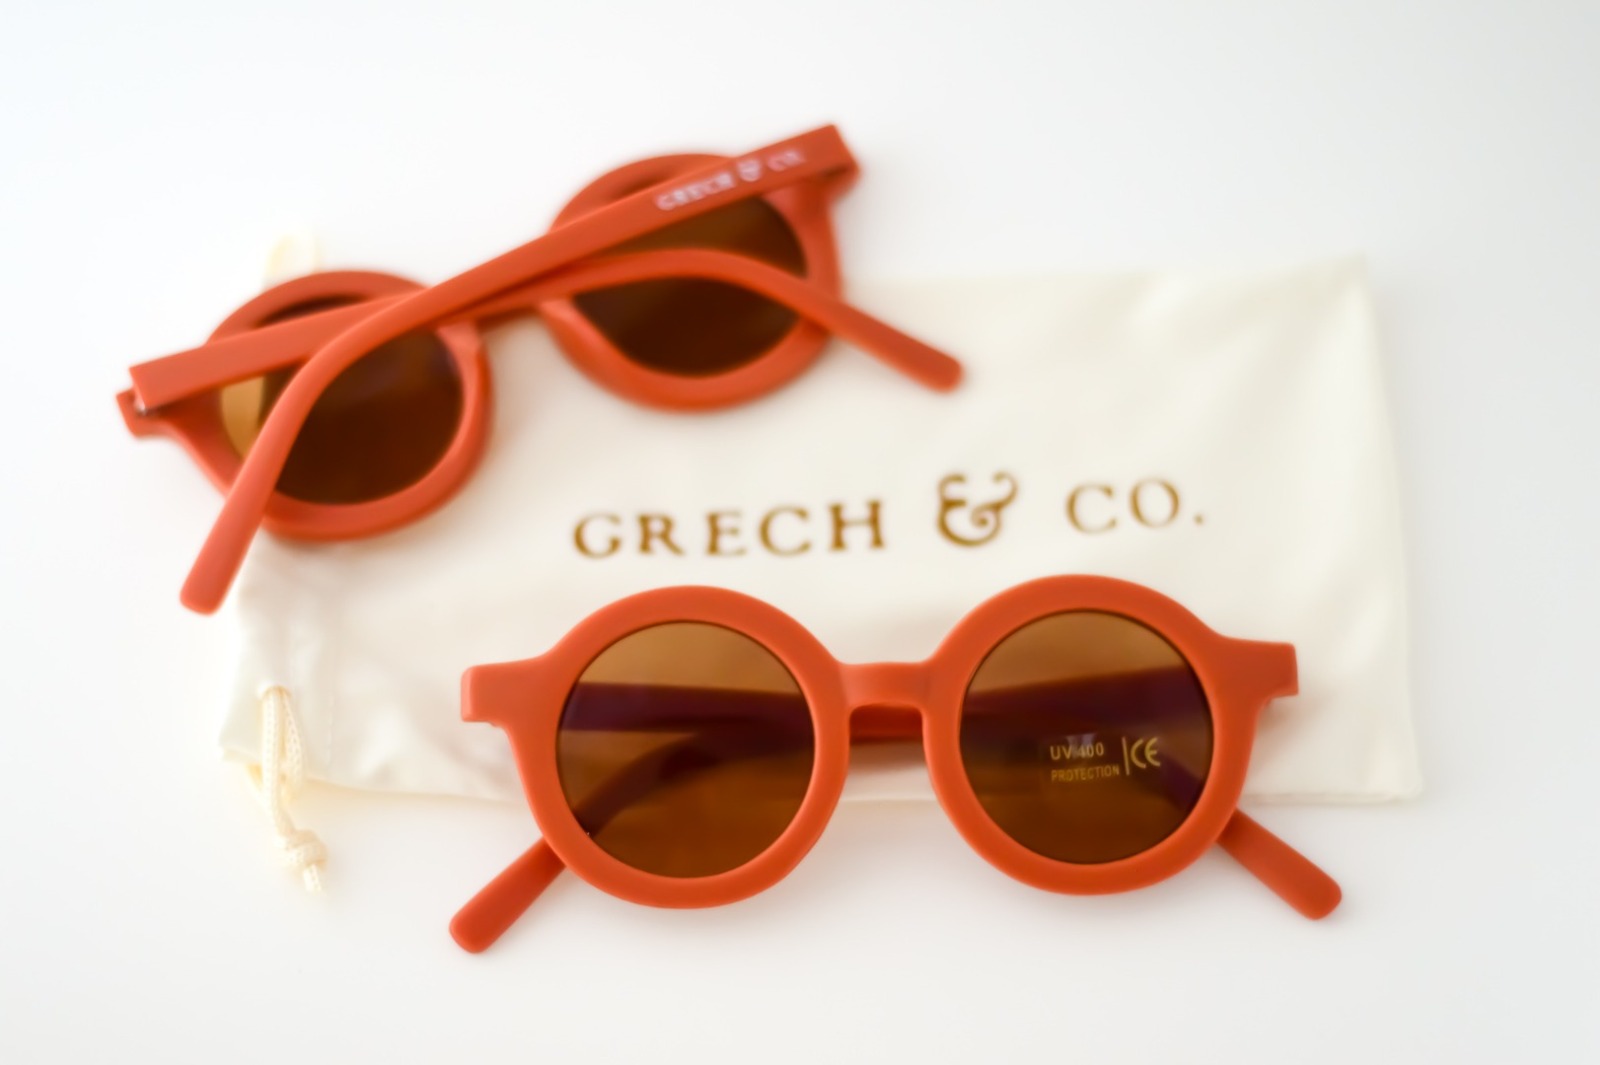 Sonnenbrille Original Rust Grech & Co